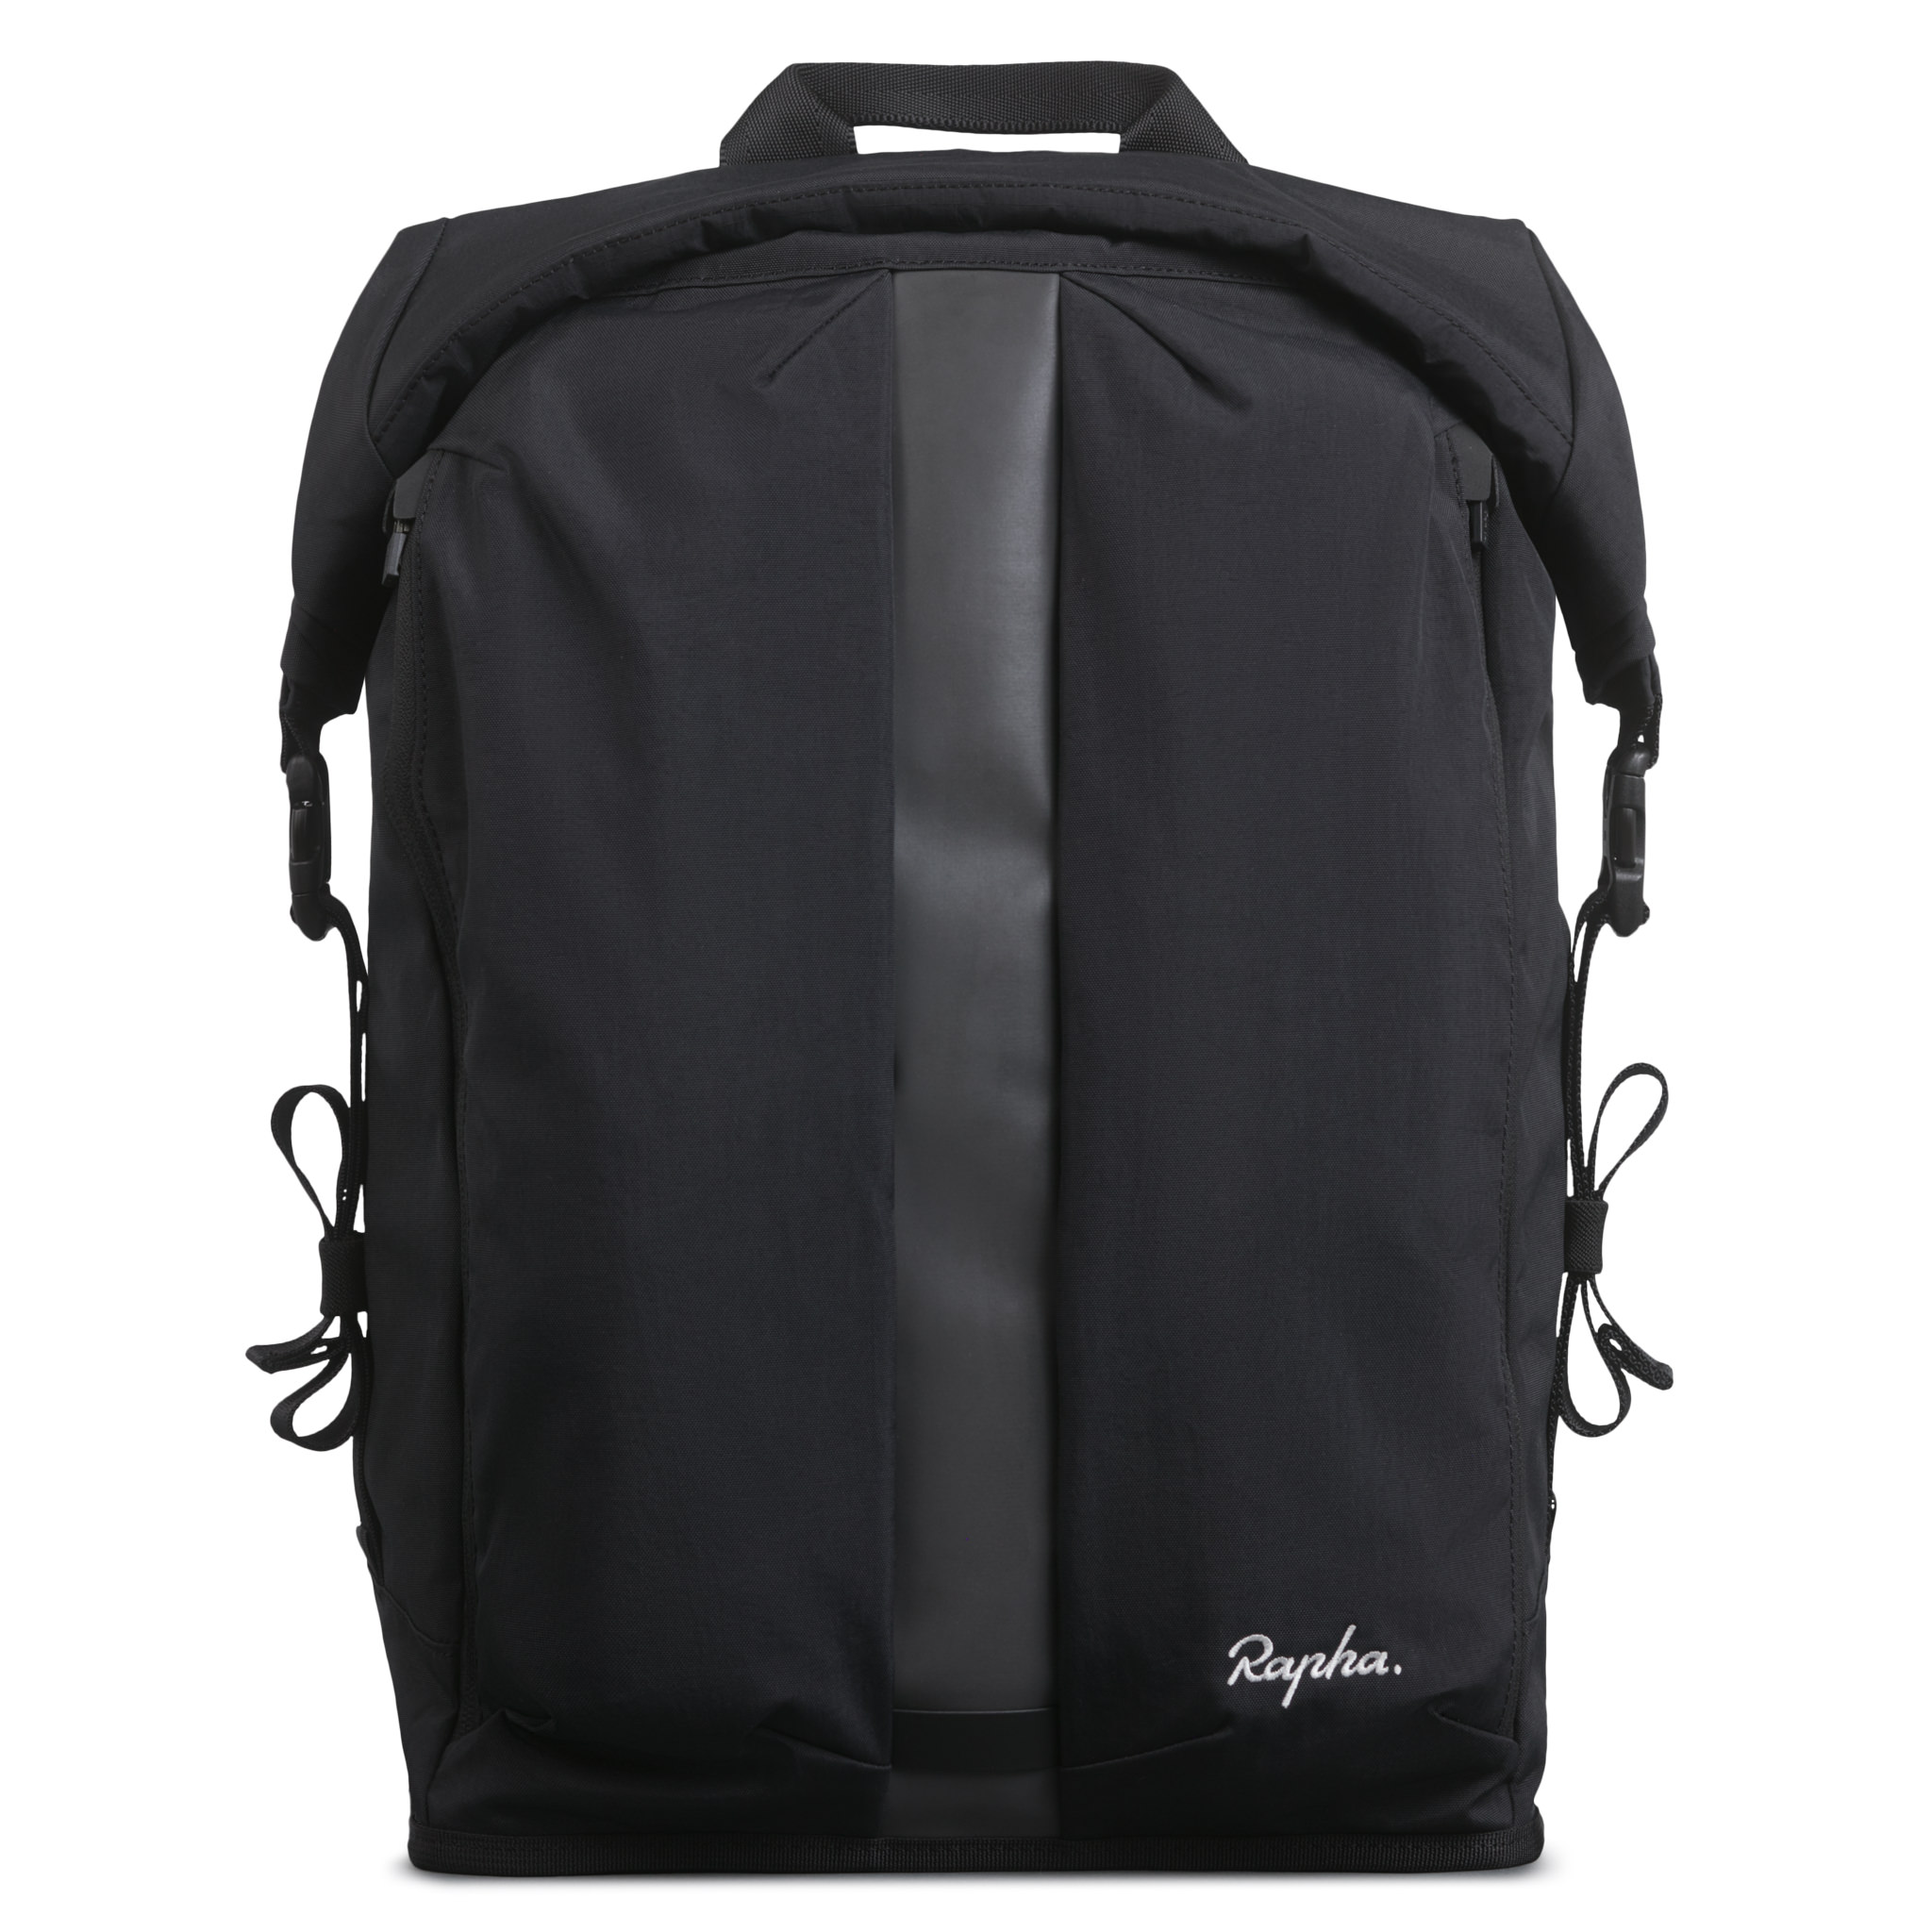 M sand multi-pocket backpack